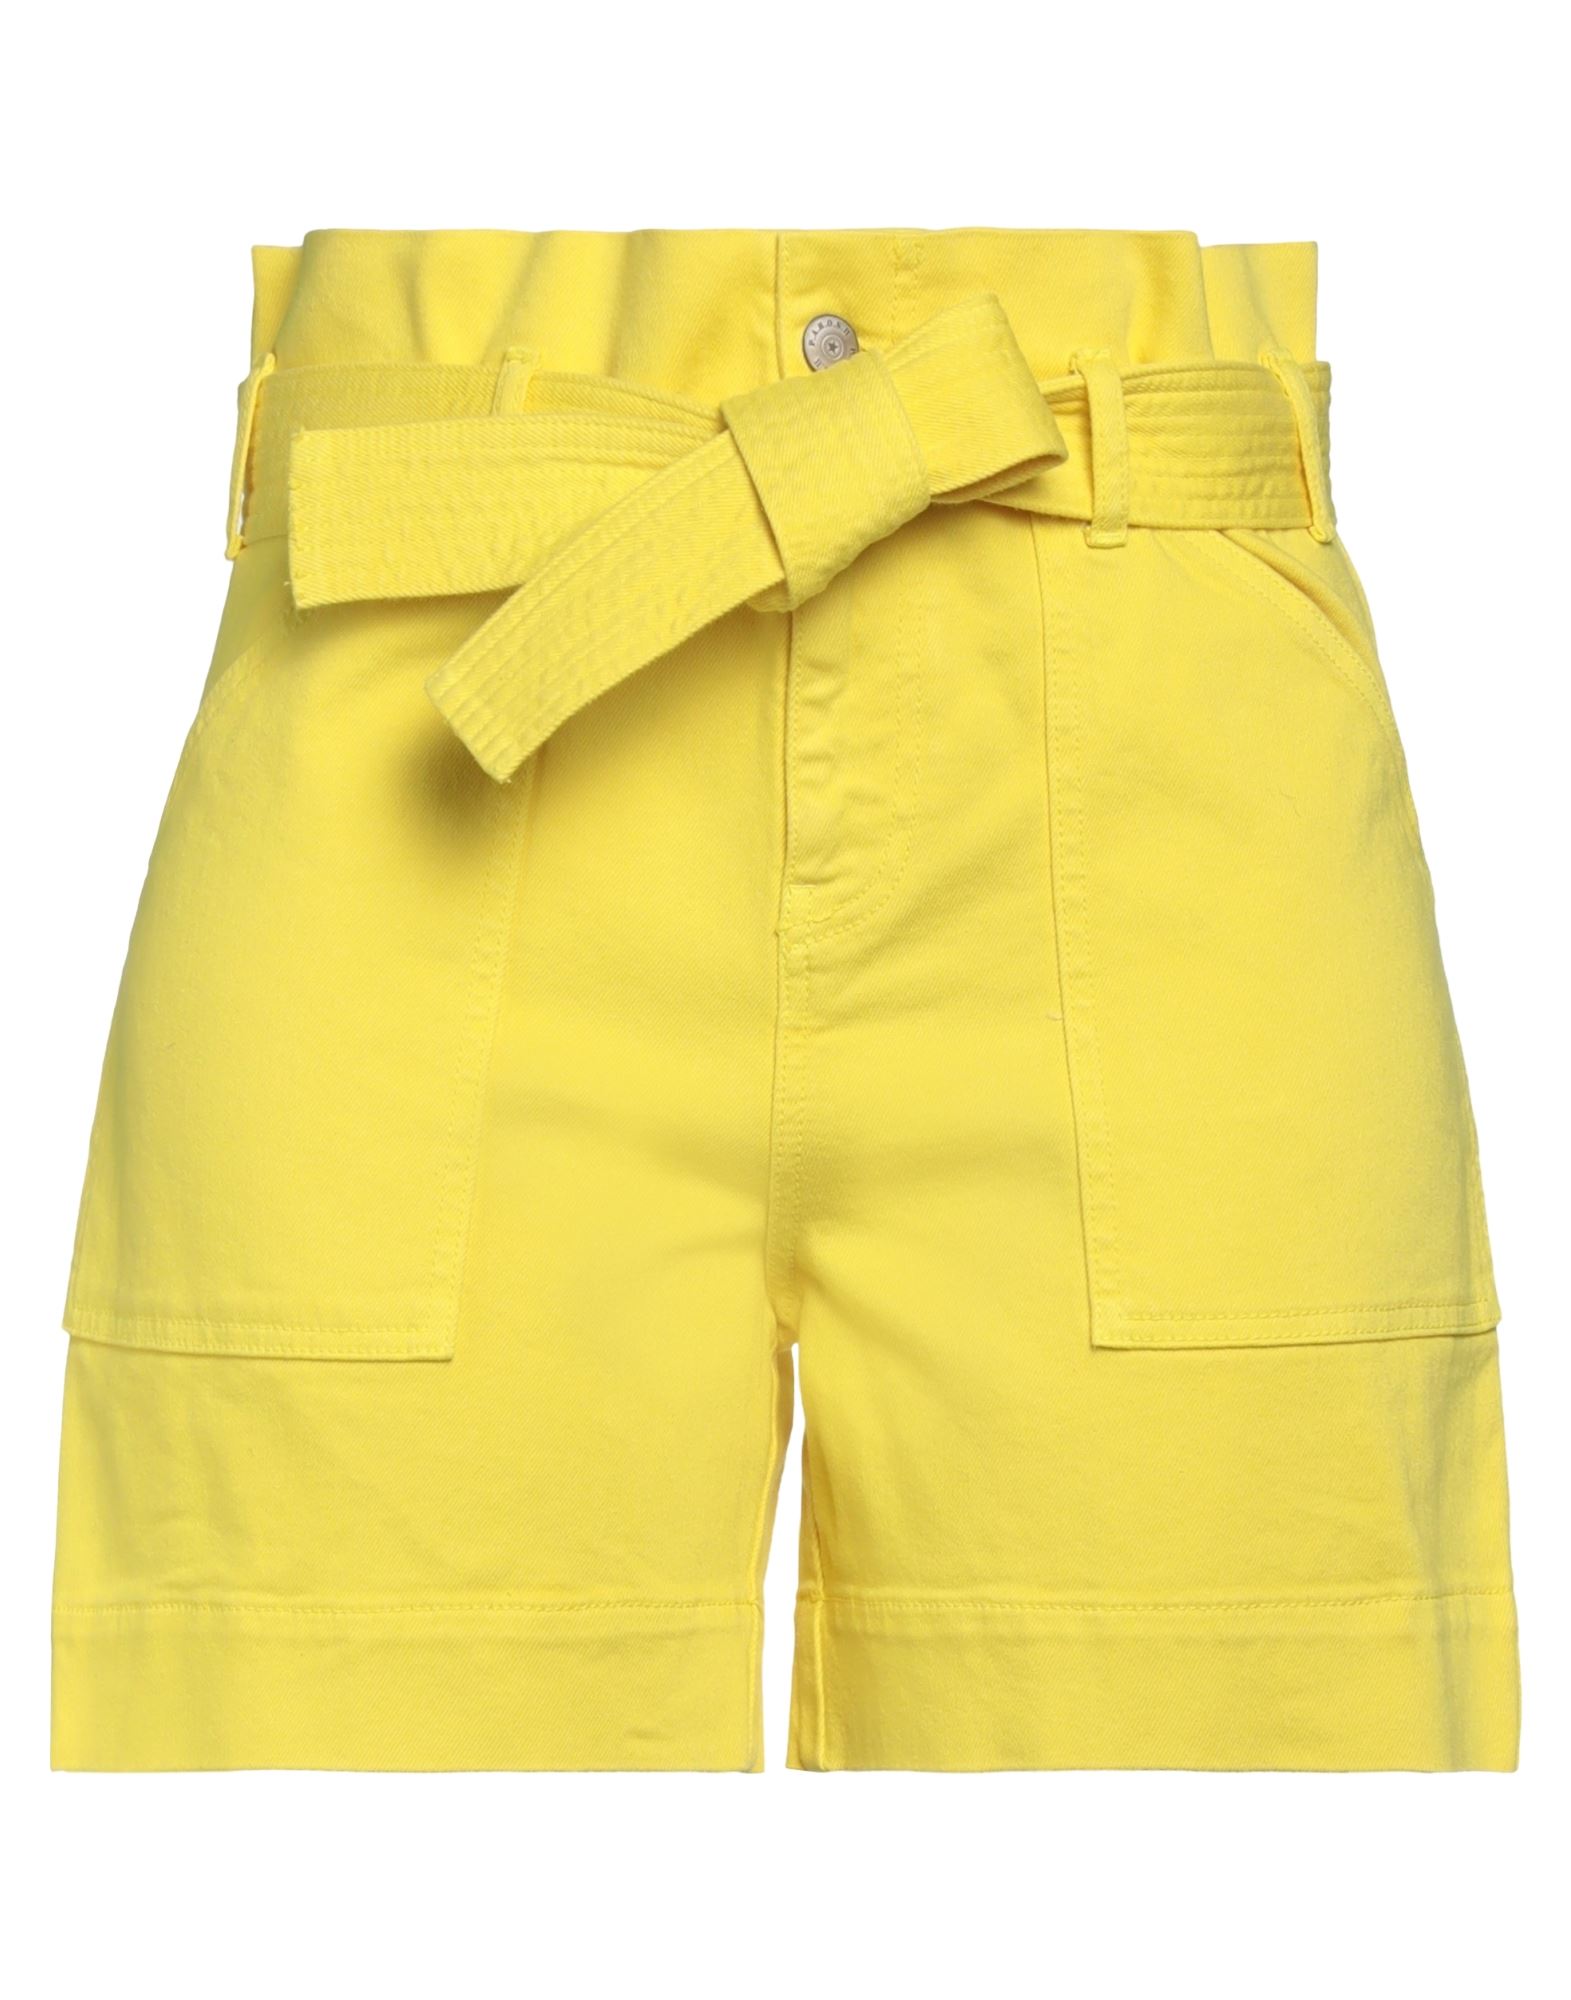 P.a.r.o.s.h P. A.r. O.s. H. Woman Shorts & Bermuda Shorts Yellow Size M Cotton, Elastane